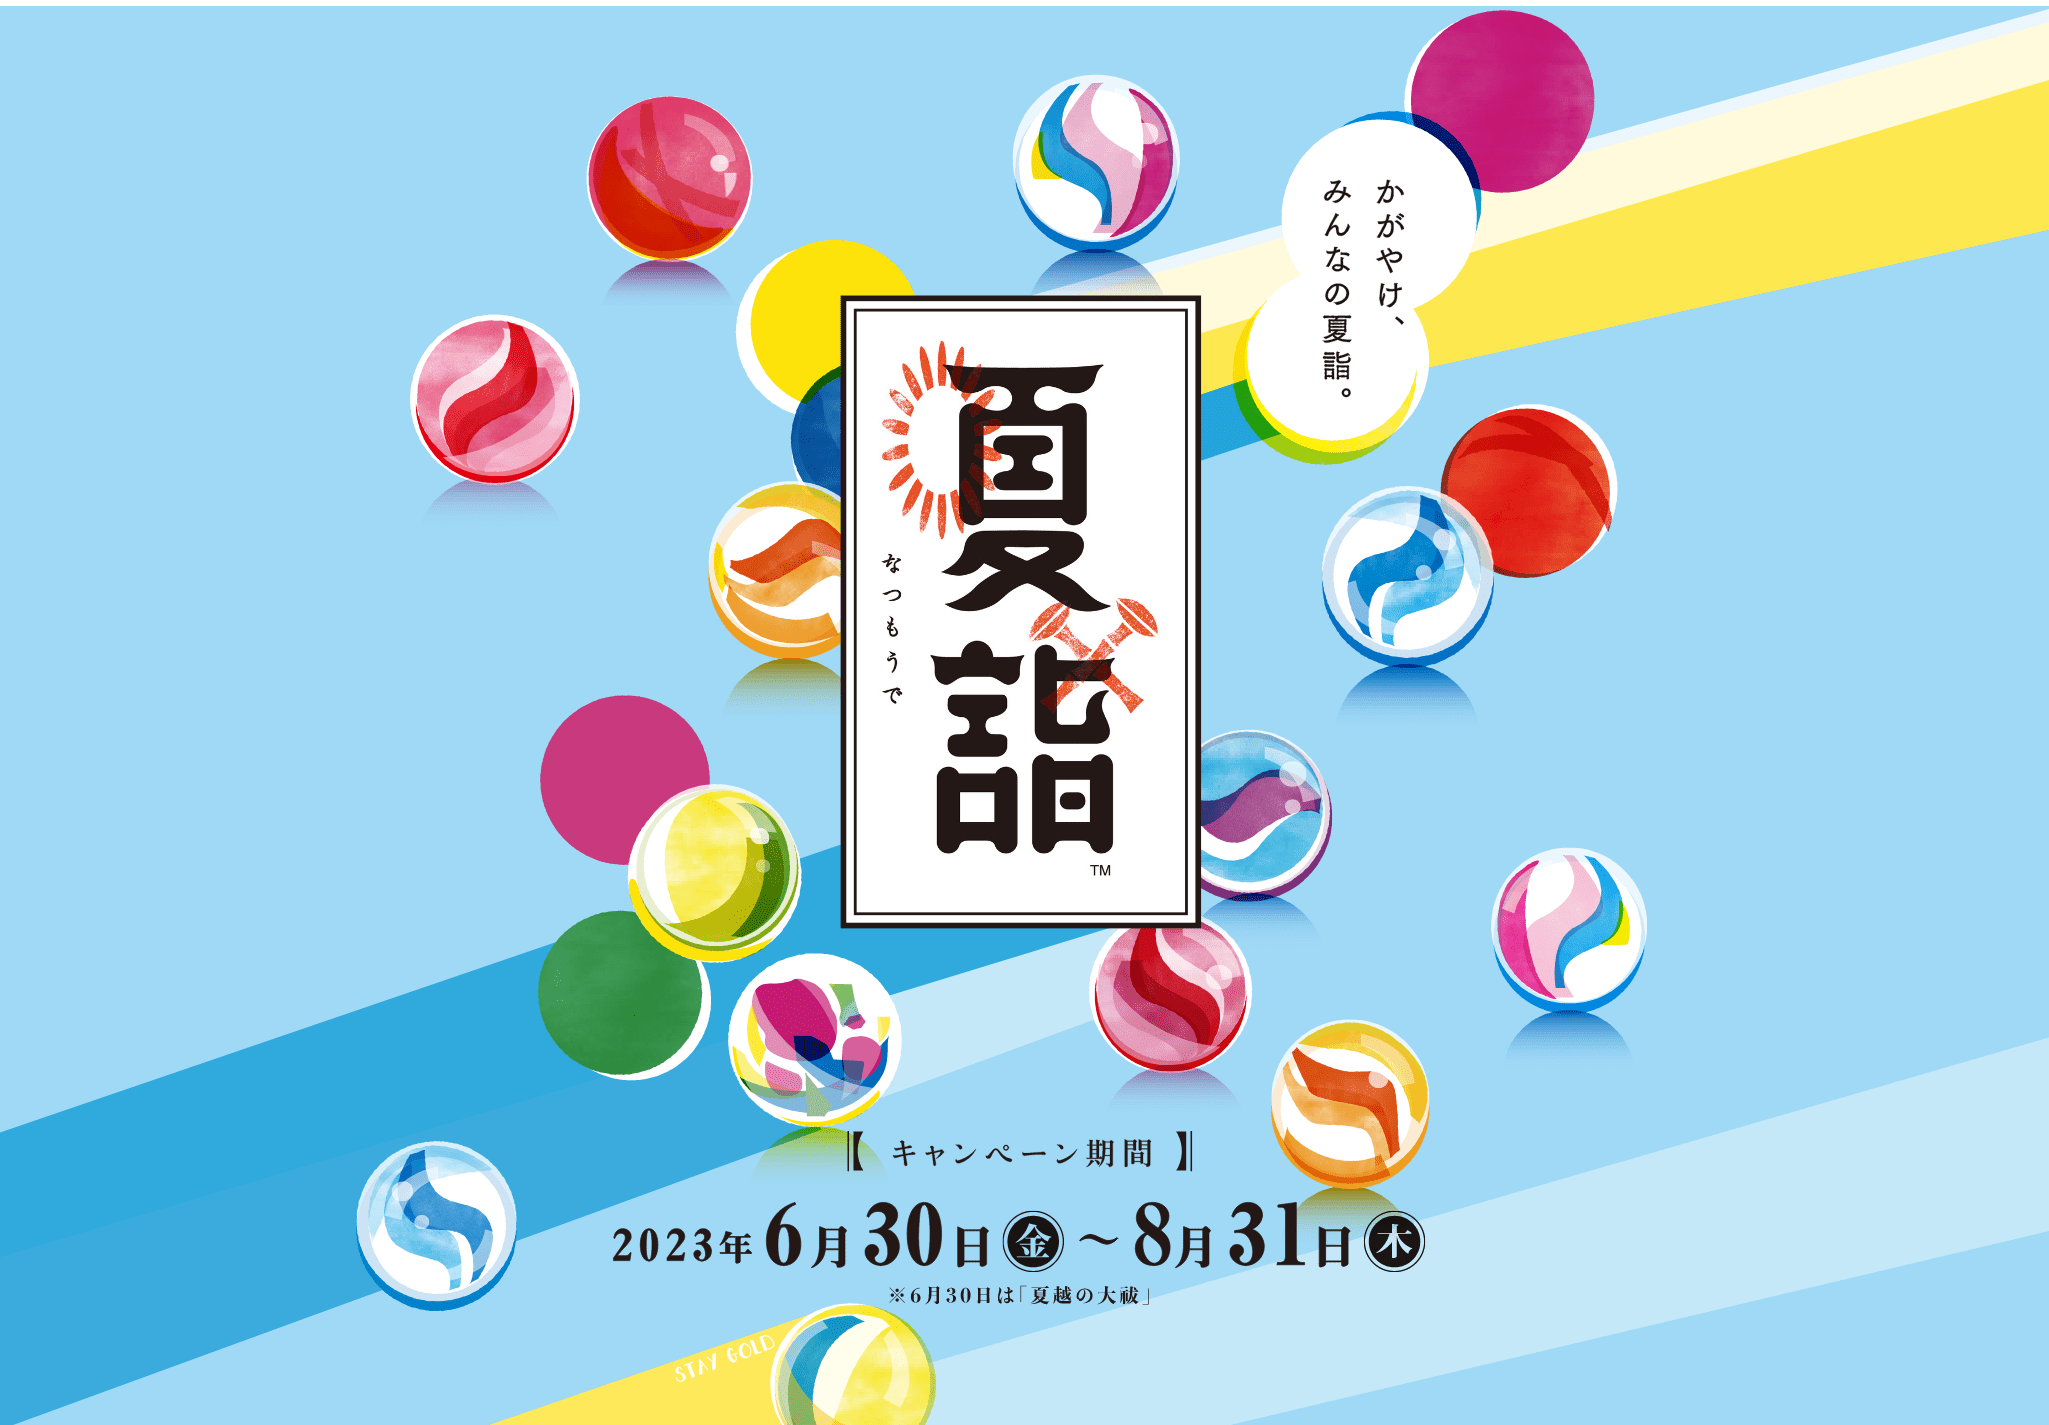 夏詣 【キャンペーン期間】2023年6月30日(金)〜8月31日(木)